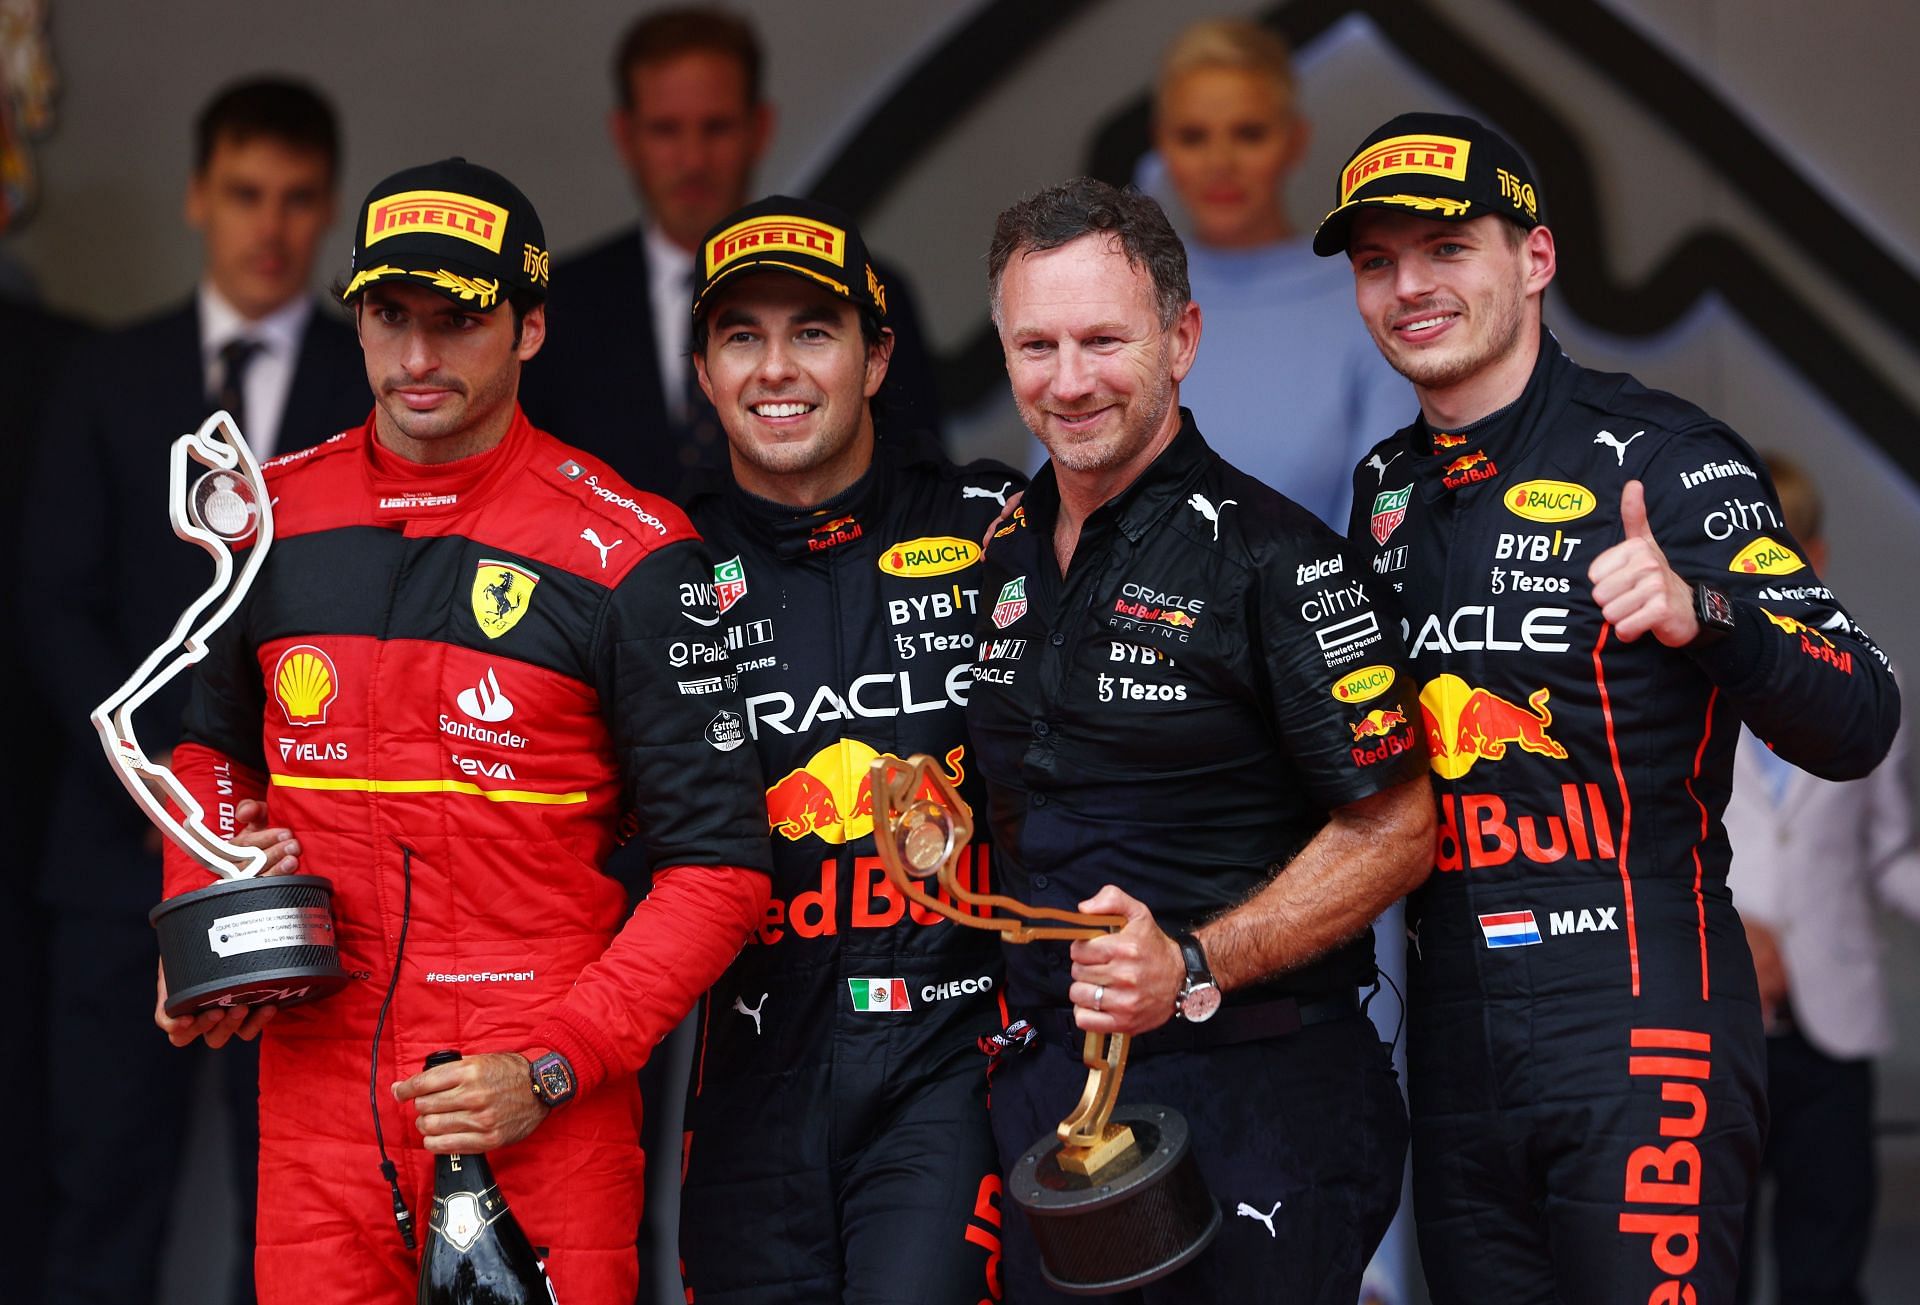 Sergio Perez was able to win his first-ever Monaco GP